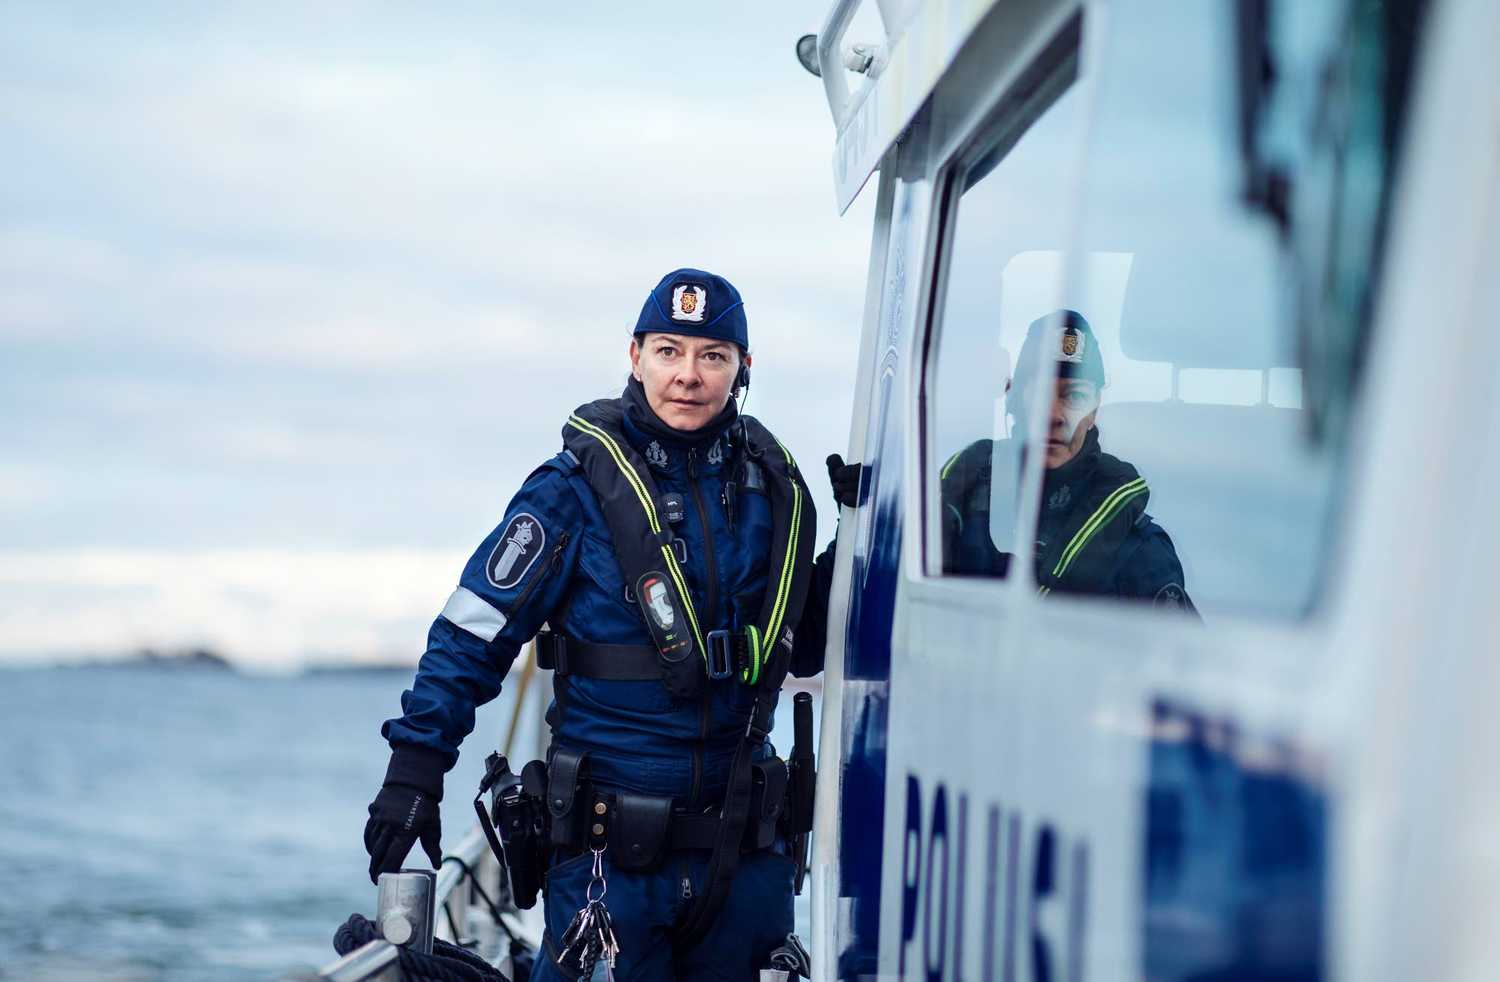 Båtpolisen står på polisbåtens däck, lutad mot räcket, bredvid kan man se texten poliisi på sidan av båten.